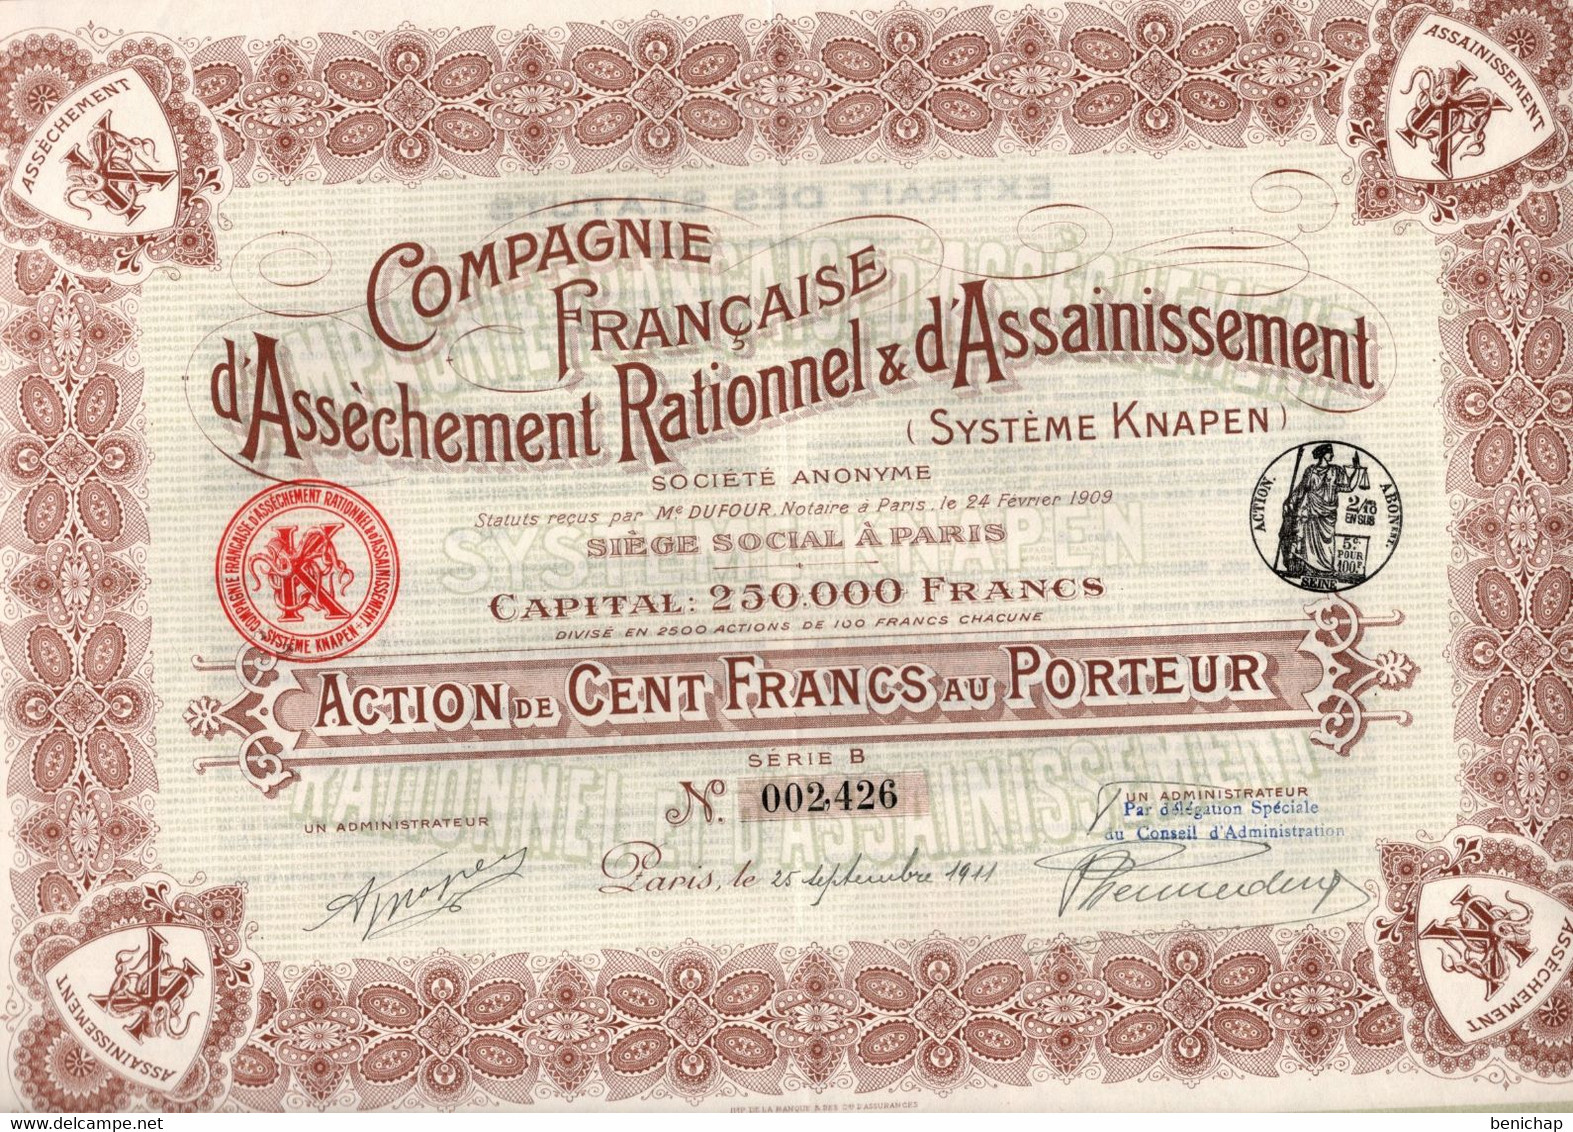 Action De 100 Frcs Au Porteur - Compagnie Française D'Assèchement Rationnel & D'Assainissement Knapen - Paris 1911 - Water